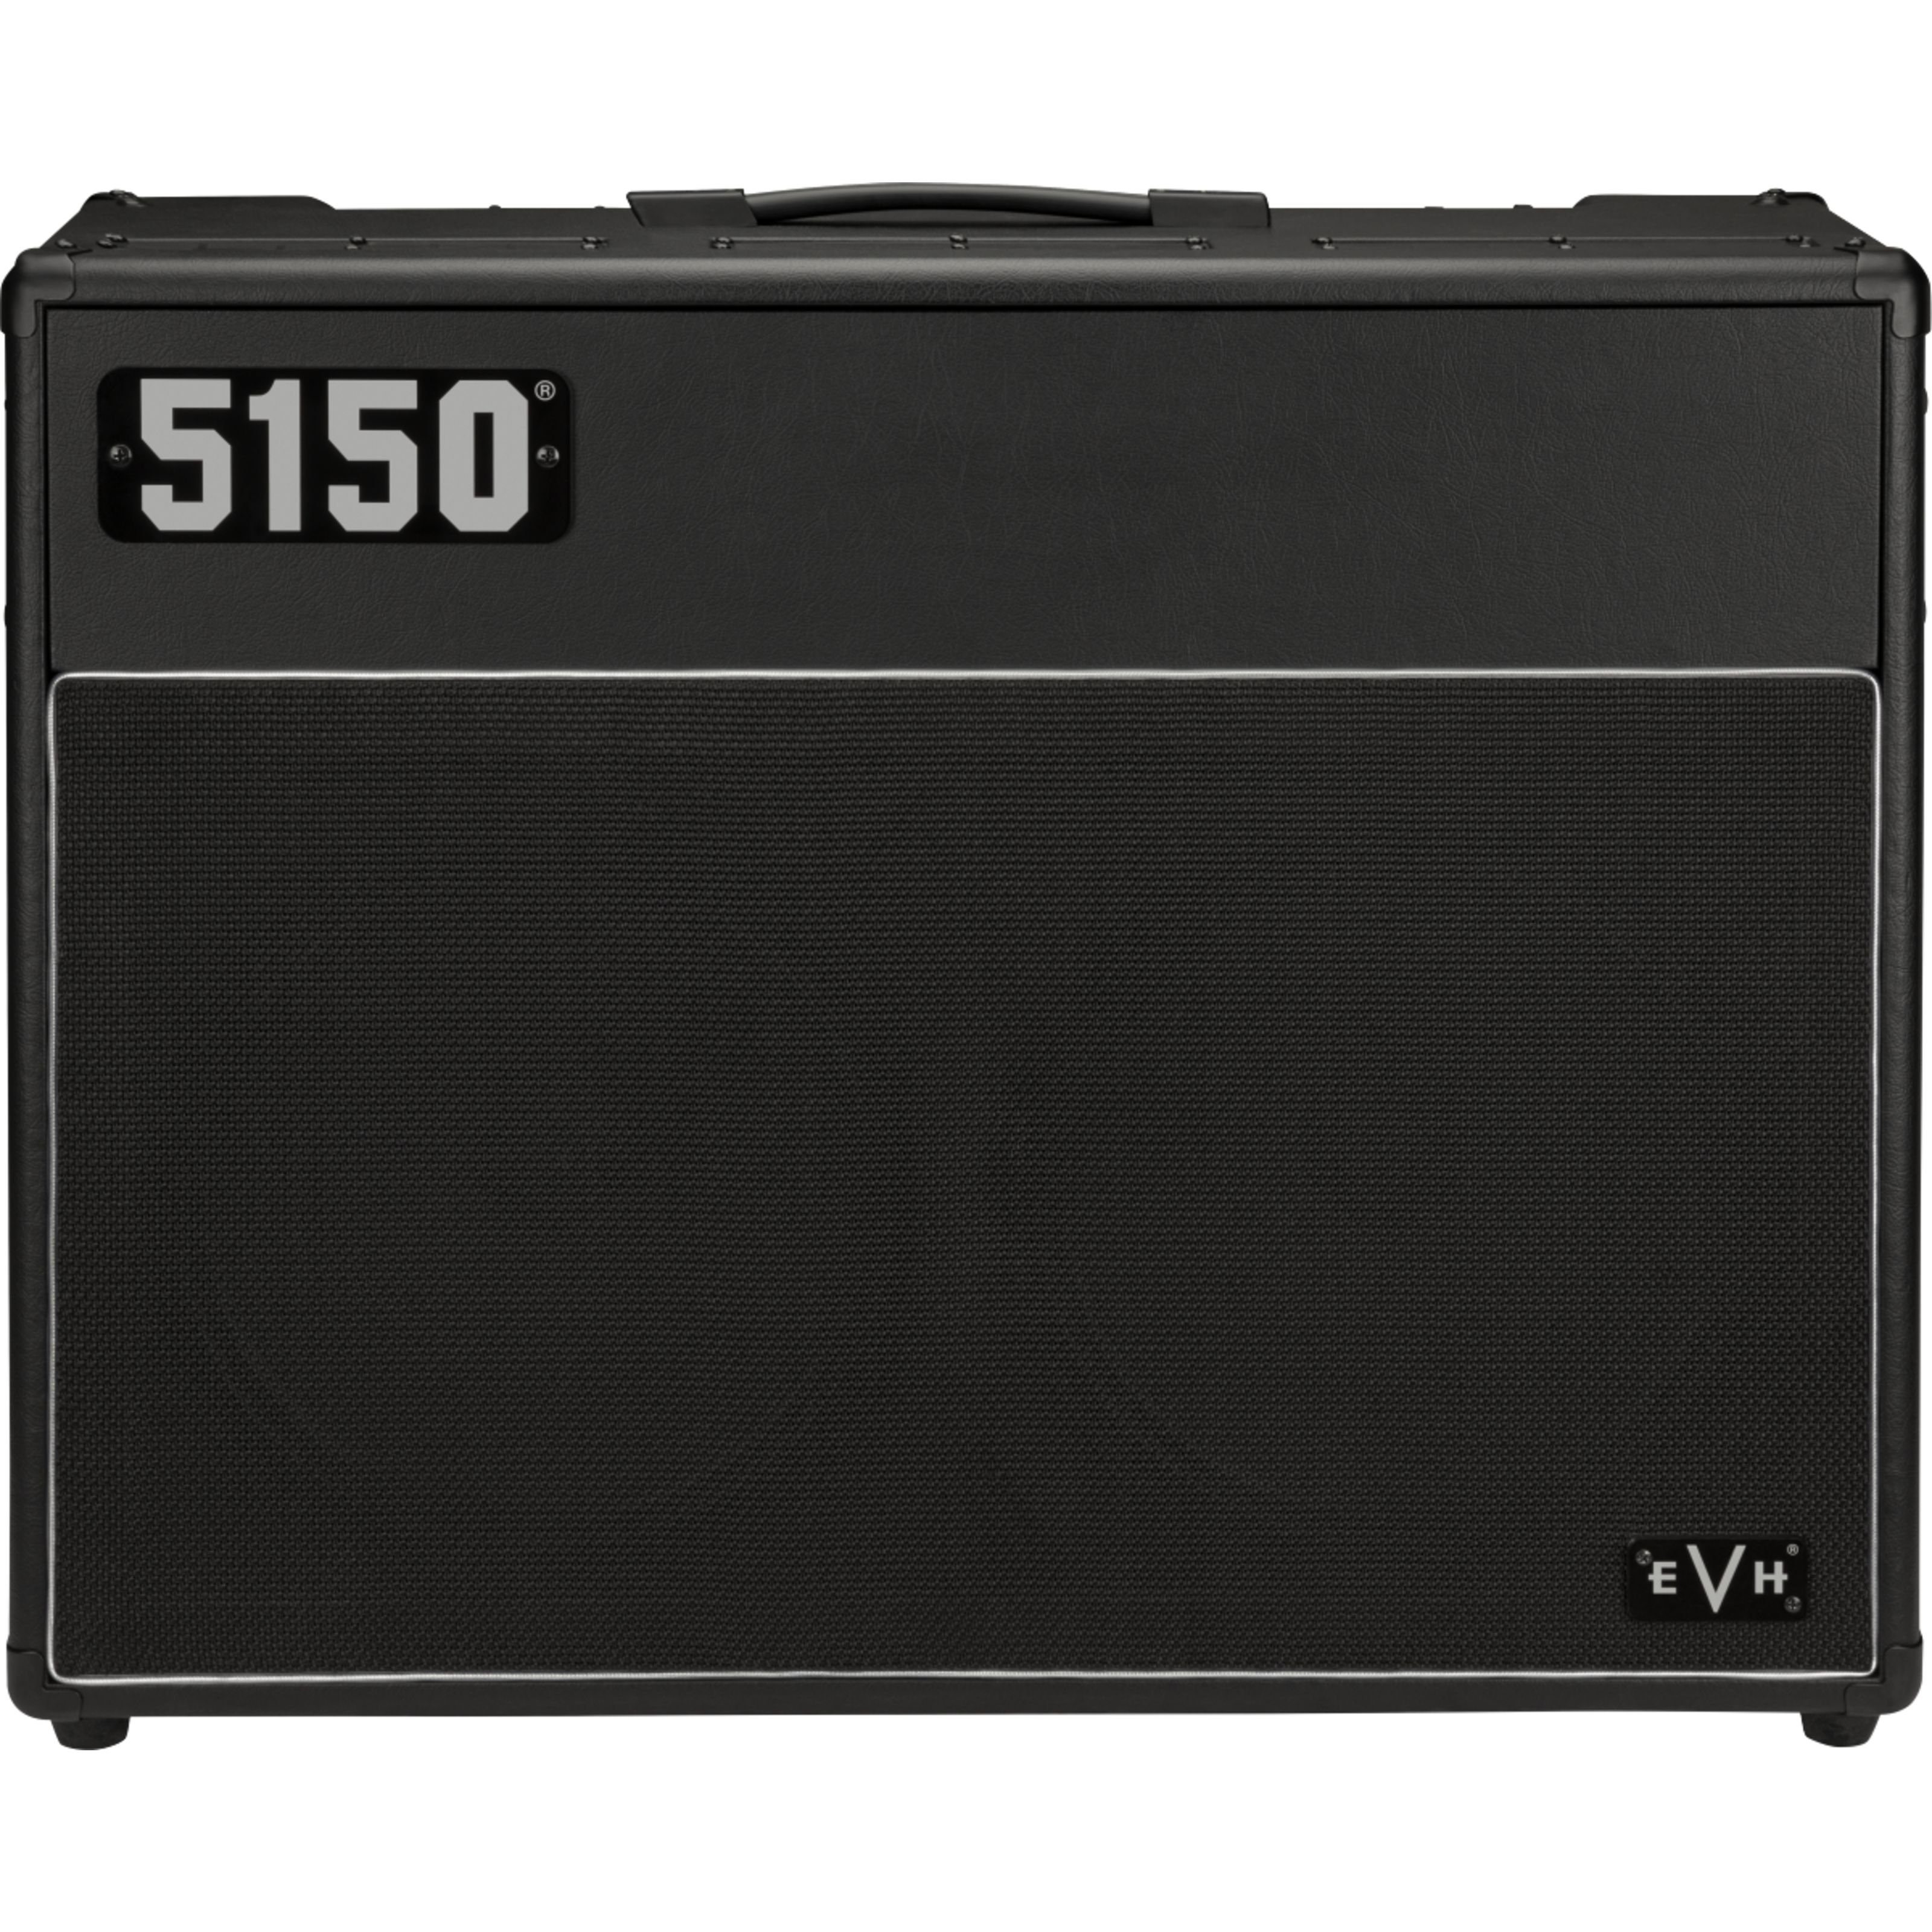 EVH Verstärker (5150 Iconic Series 60W 2x12 Combo Black - Röhren Combo Verstärker)